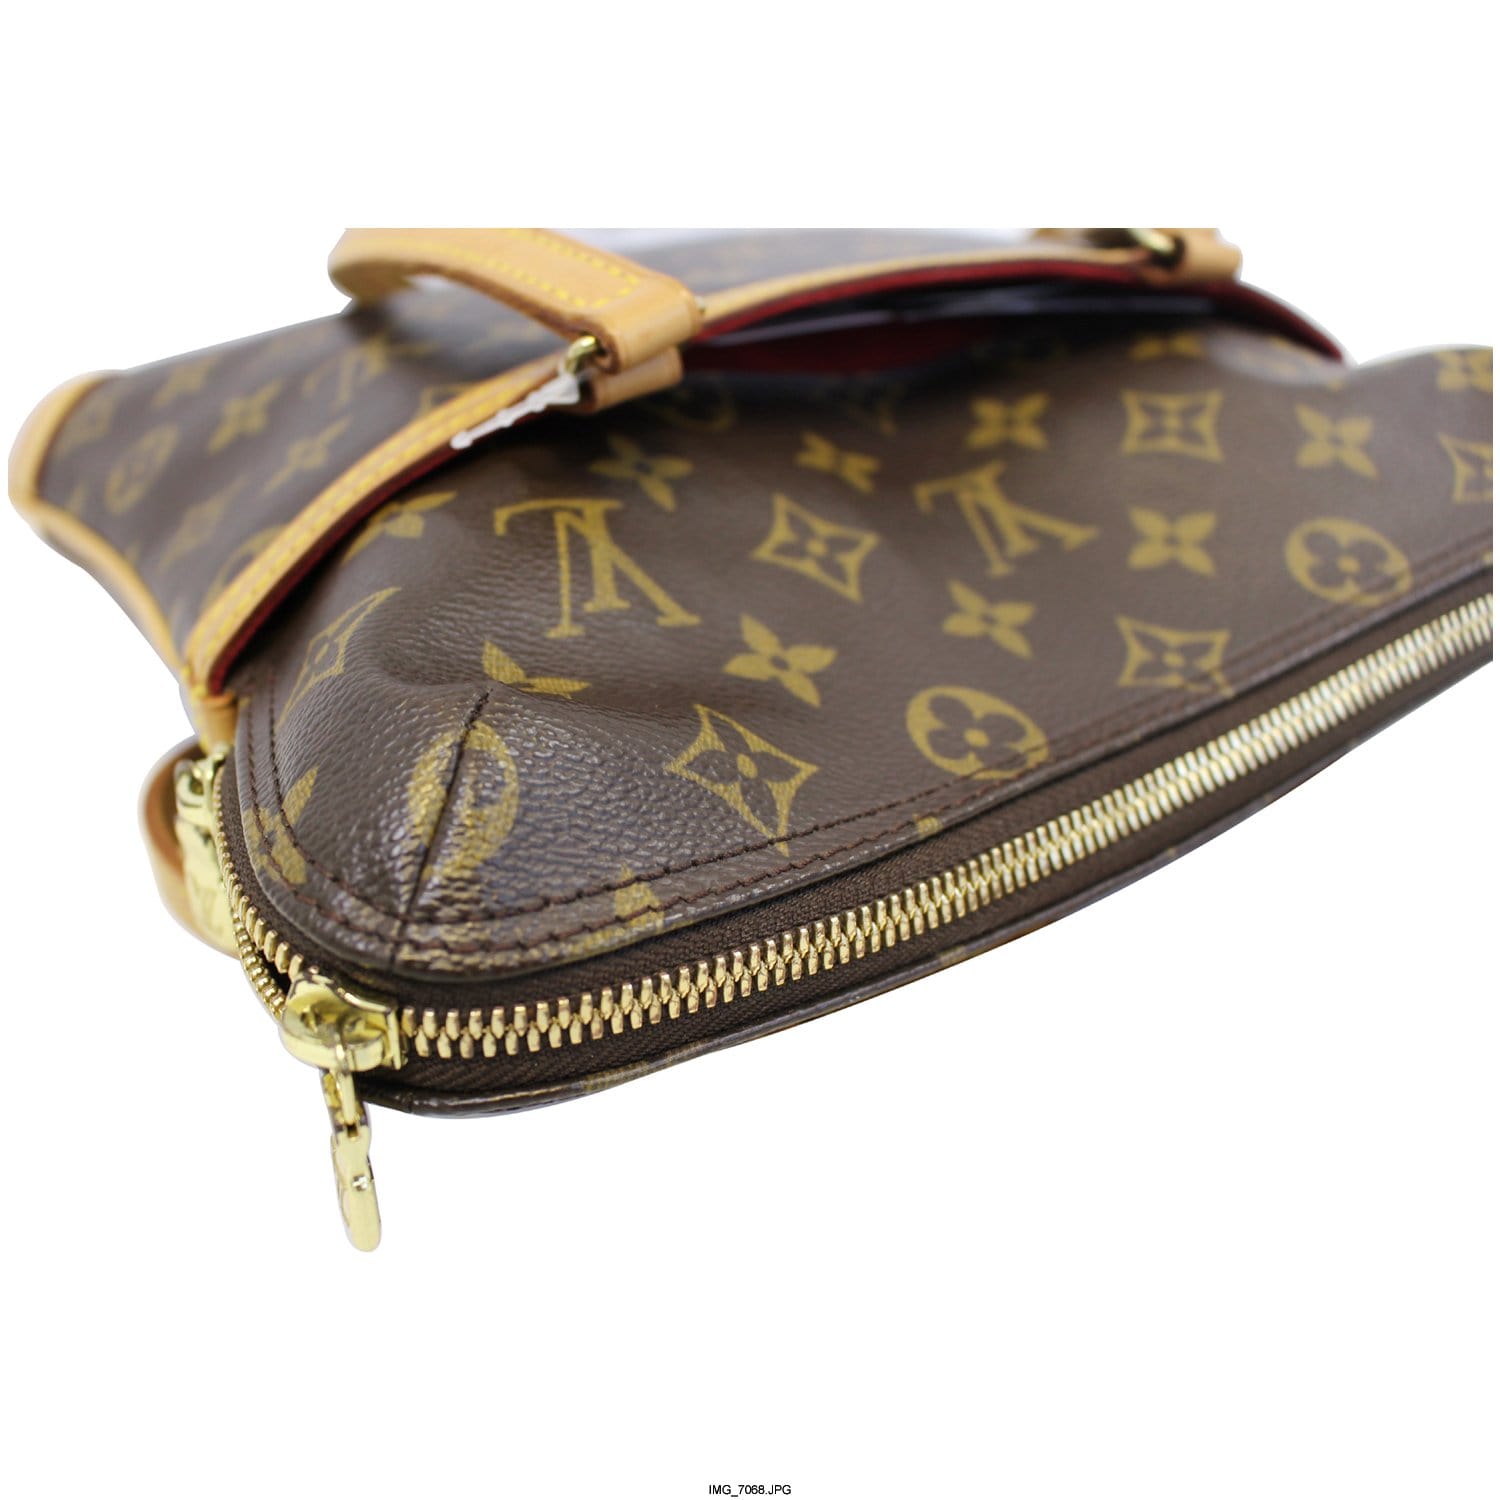 Brown Louis Vuitton Monogram Coussin GM Shoulder Bag